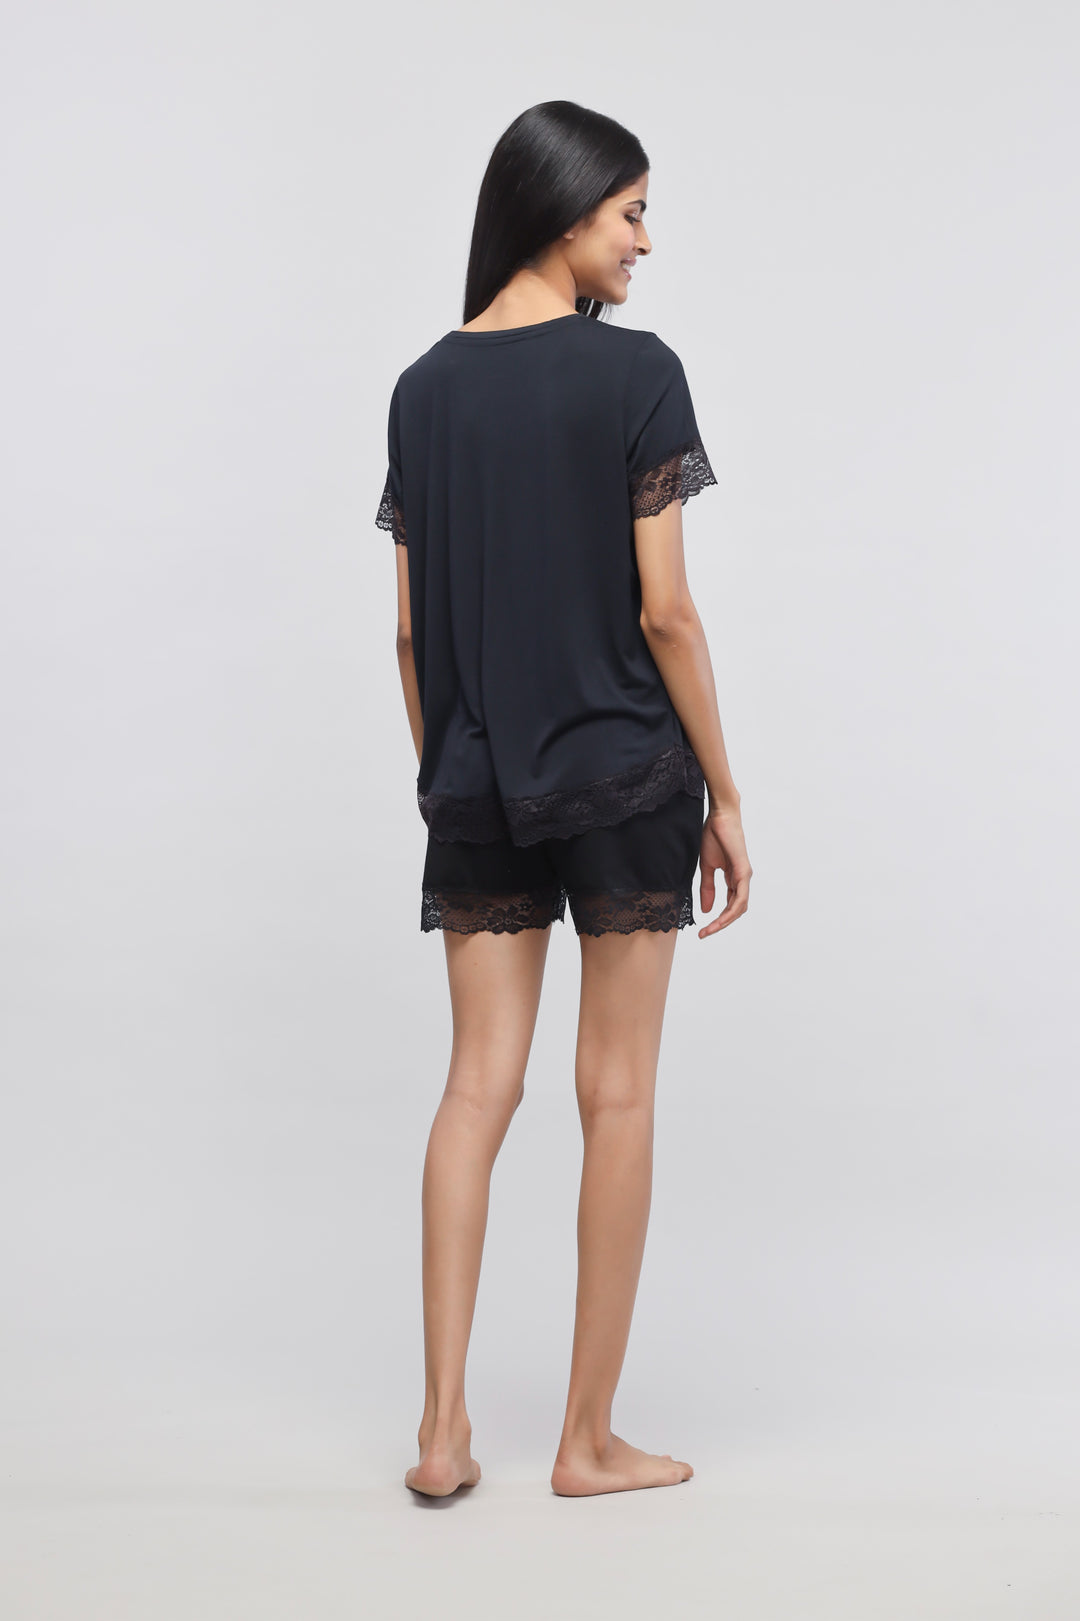 Delicate Black Lace Shorts Set